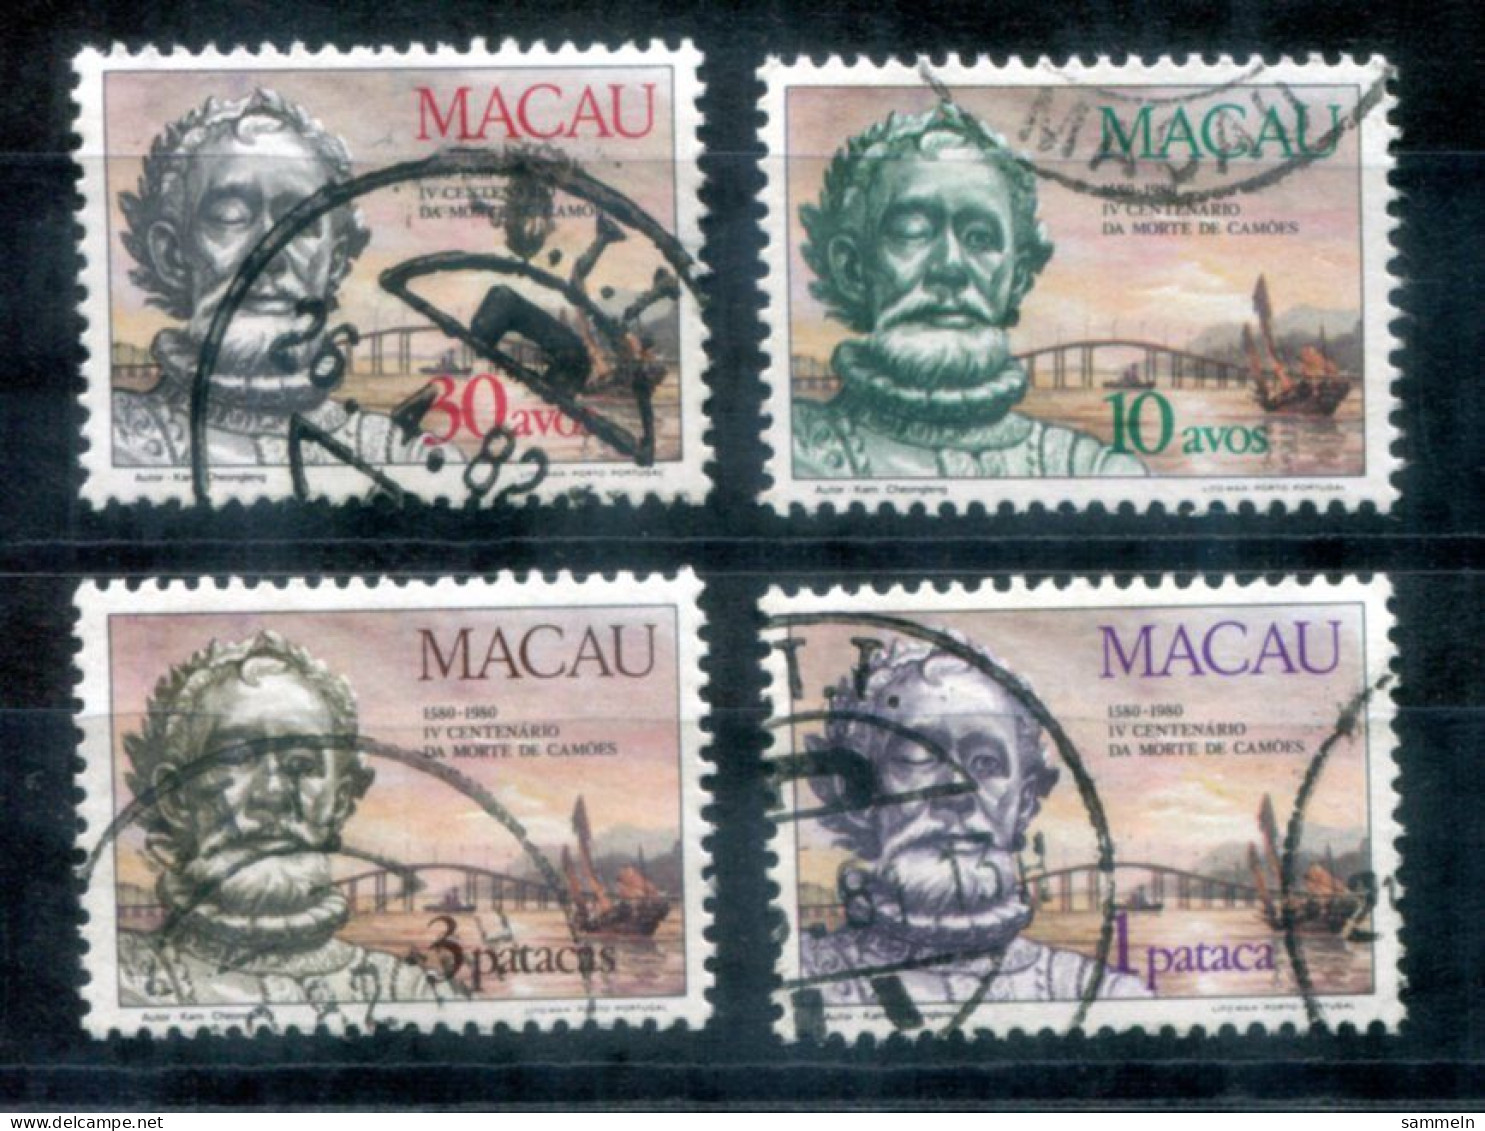 MACAO 476-479 Canc. - Schiff, Ship, Bateau, Camoes - MACAU - Used Stamps